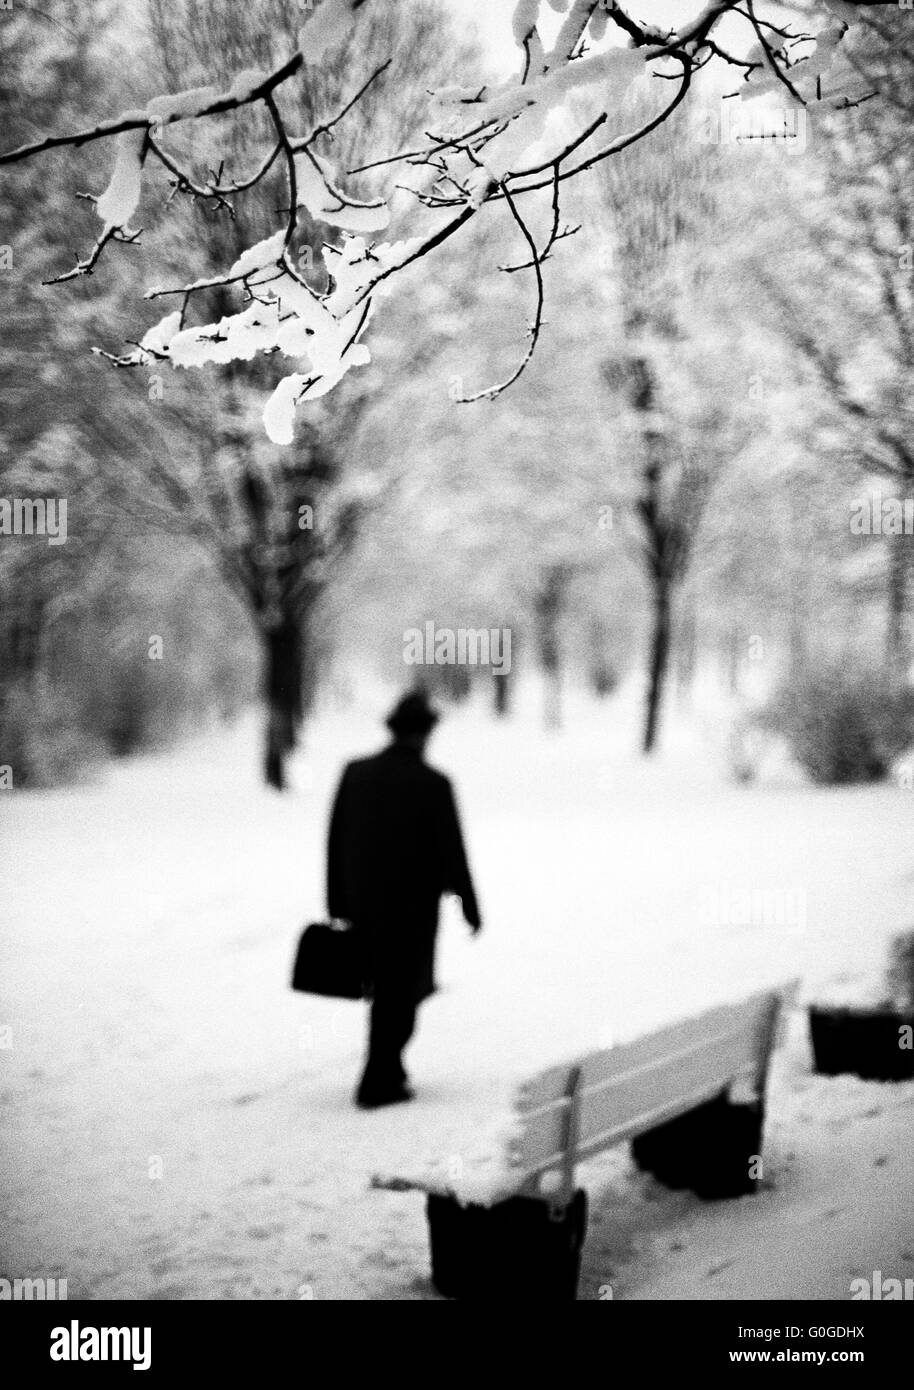 70er Jahre, Jahreszeiten, Winter, Schnee, Mann mit Hut und Winter Mantel zu Fuß in einem Park, Unschärfe, silhouette Stockfoto